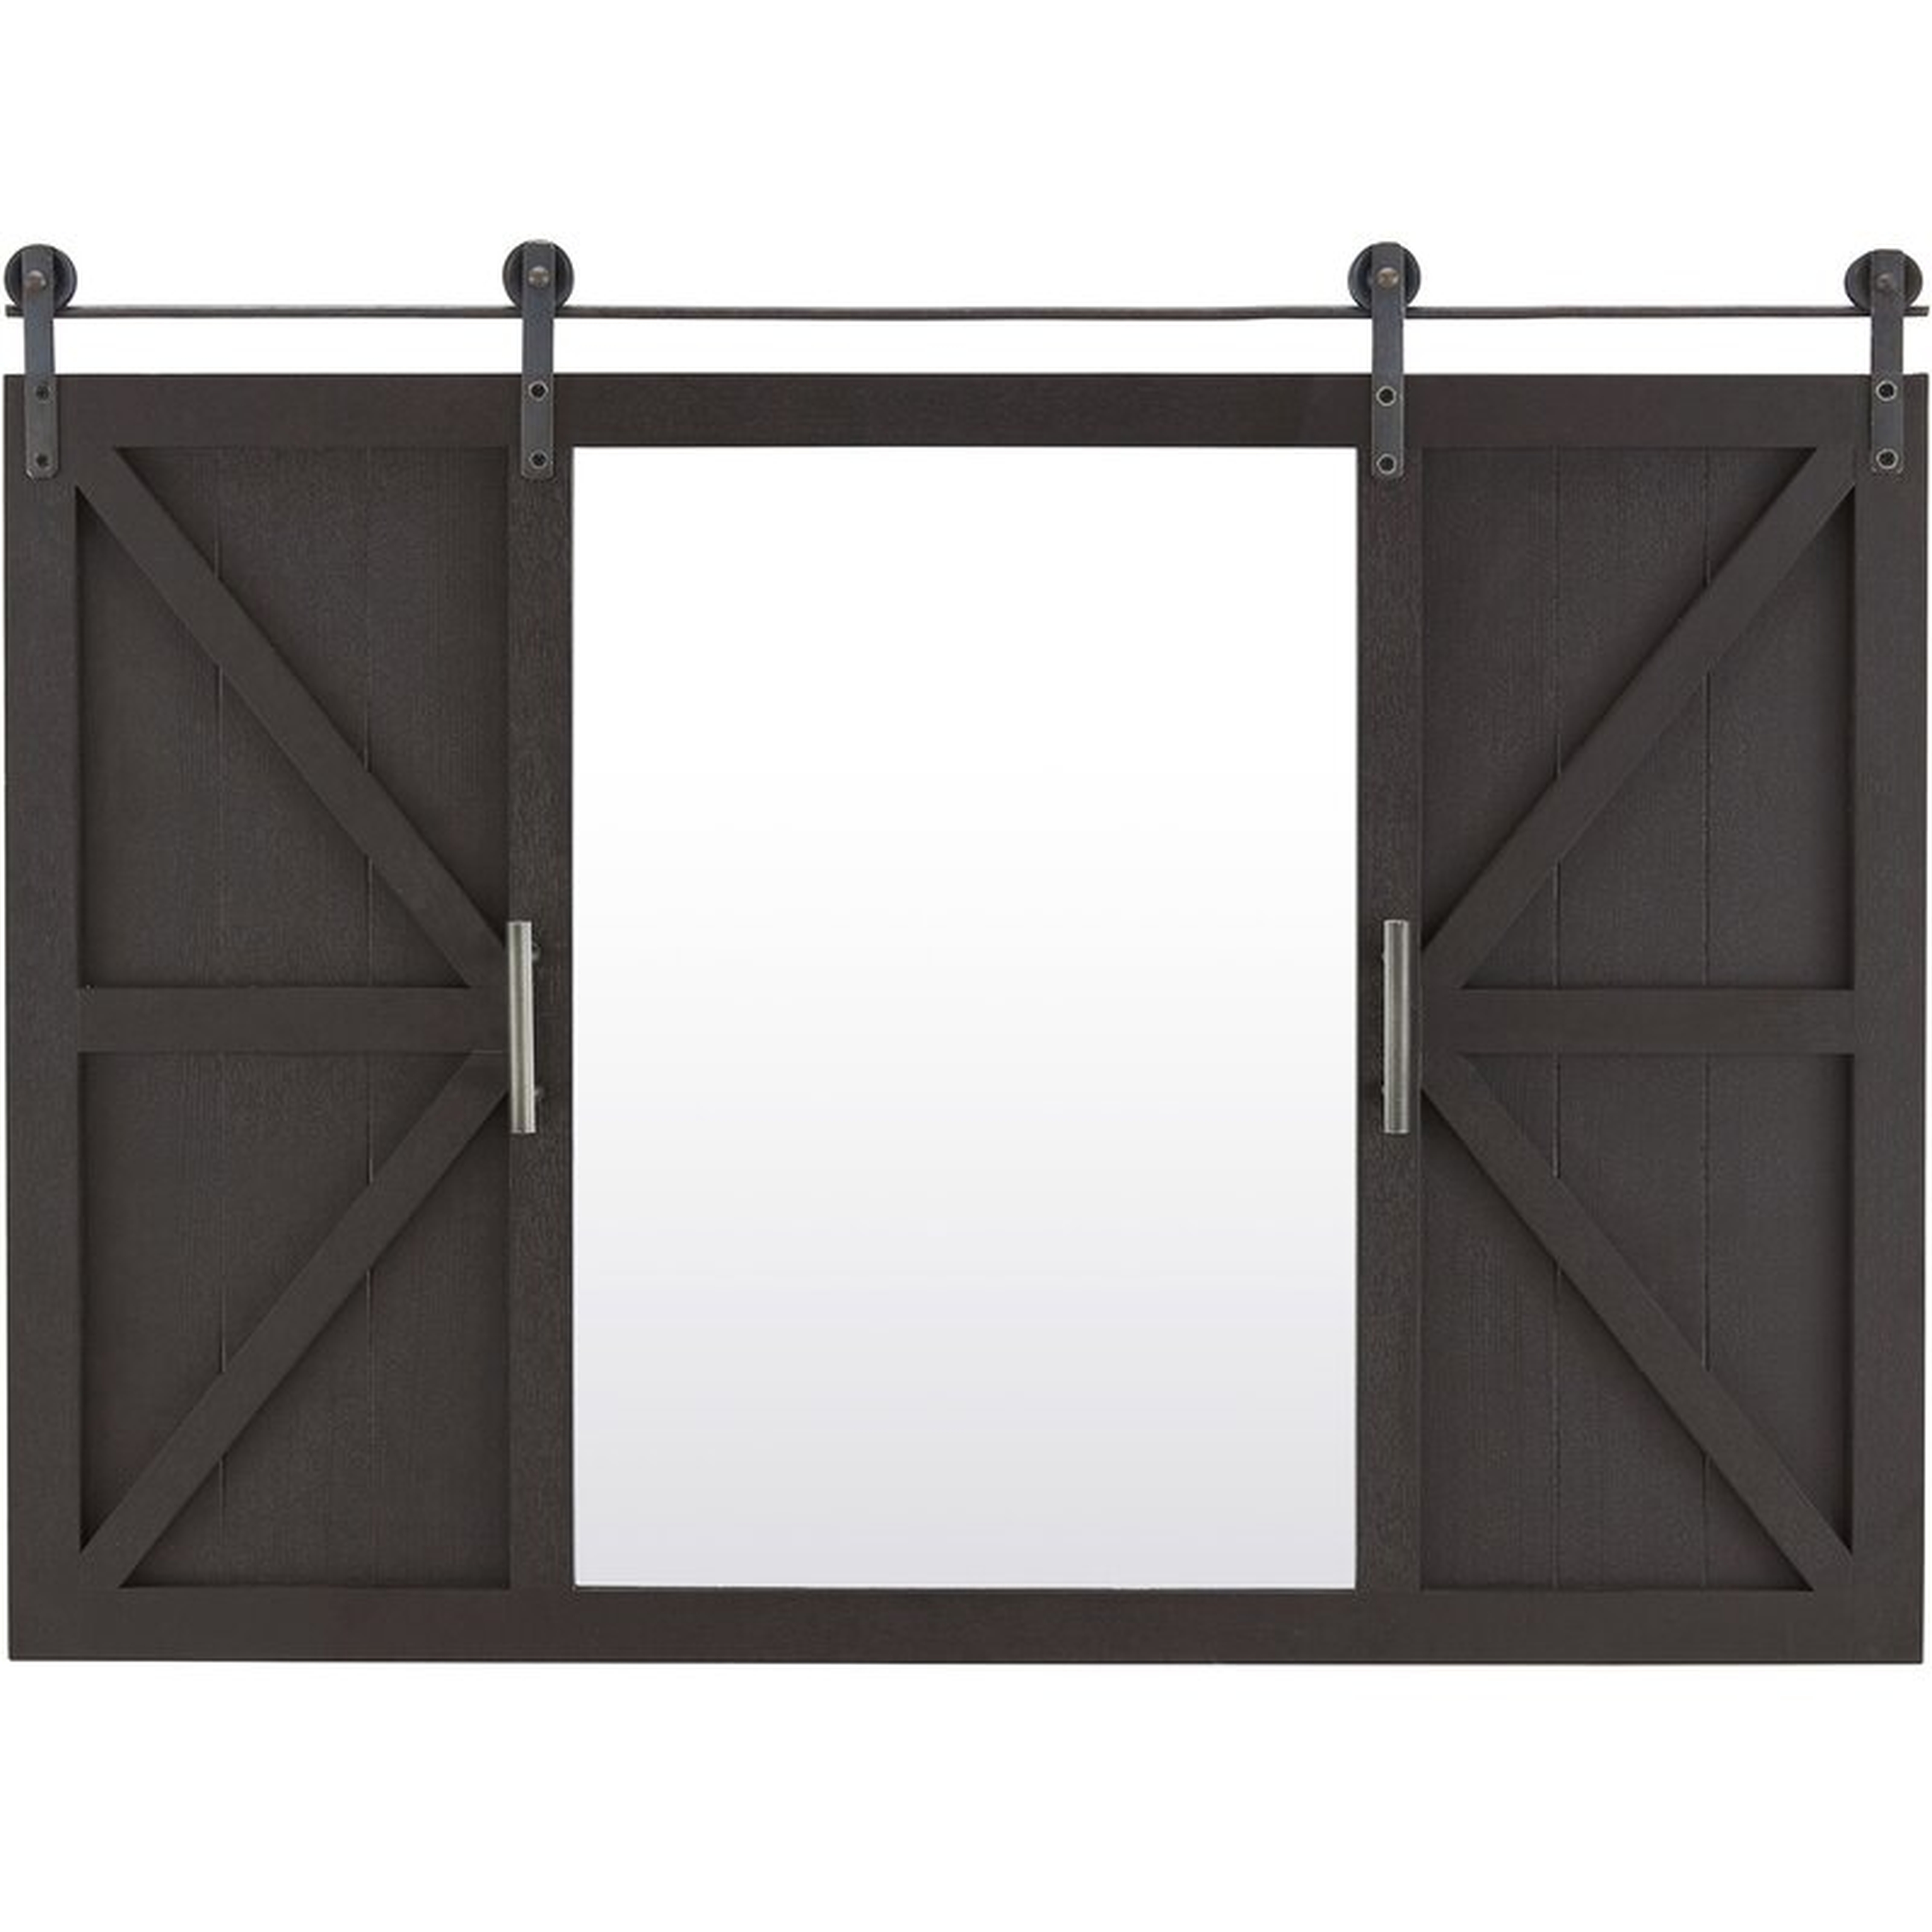 Lionville Barn Door with Shelves Accent Mirror - Wayfair